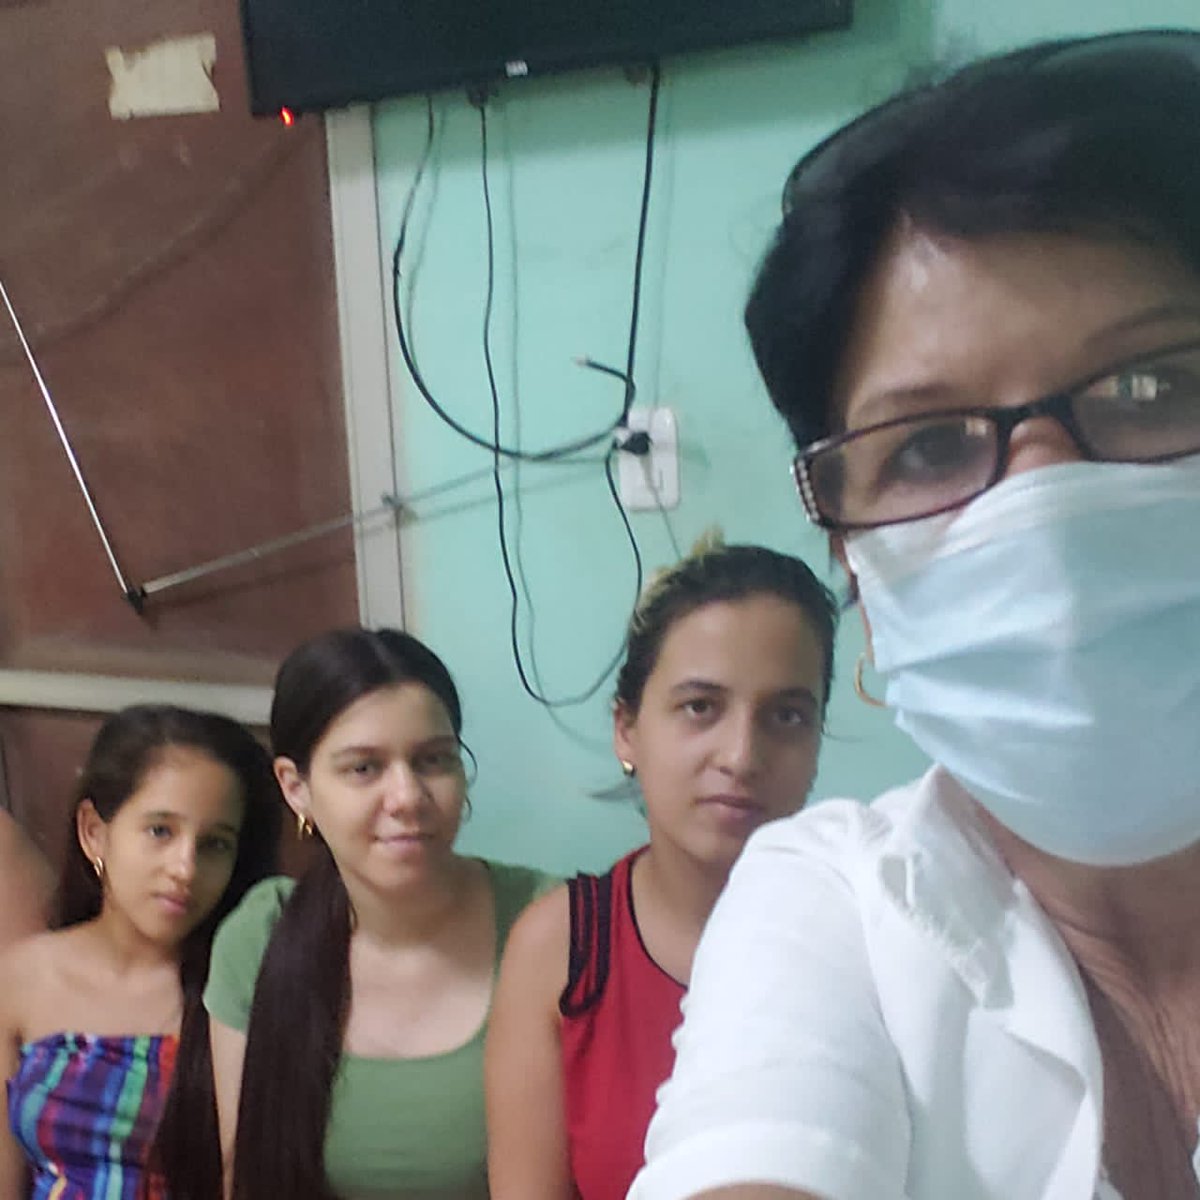 El trabajo con las gestantes adolescente es un reto que preocupa y ocupa constantemente al colectivo de PROSALUD en #CiegodeAvila , está vez desde el materno Manuel P. Fajardo.
#PrevenirEsVivir
#Cuba
#LatirAvileño
@DiazCanelB @PitaDra
@dpsCiego @cphecav 
@IzquierdoAlons1